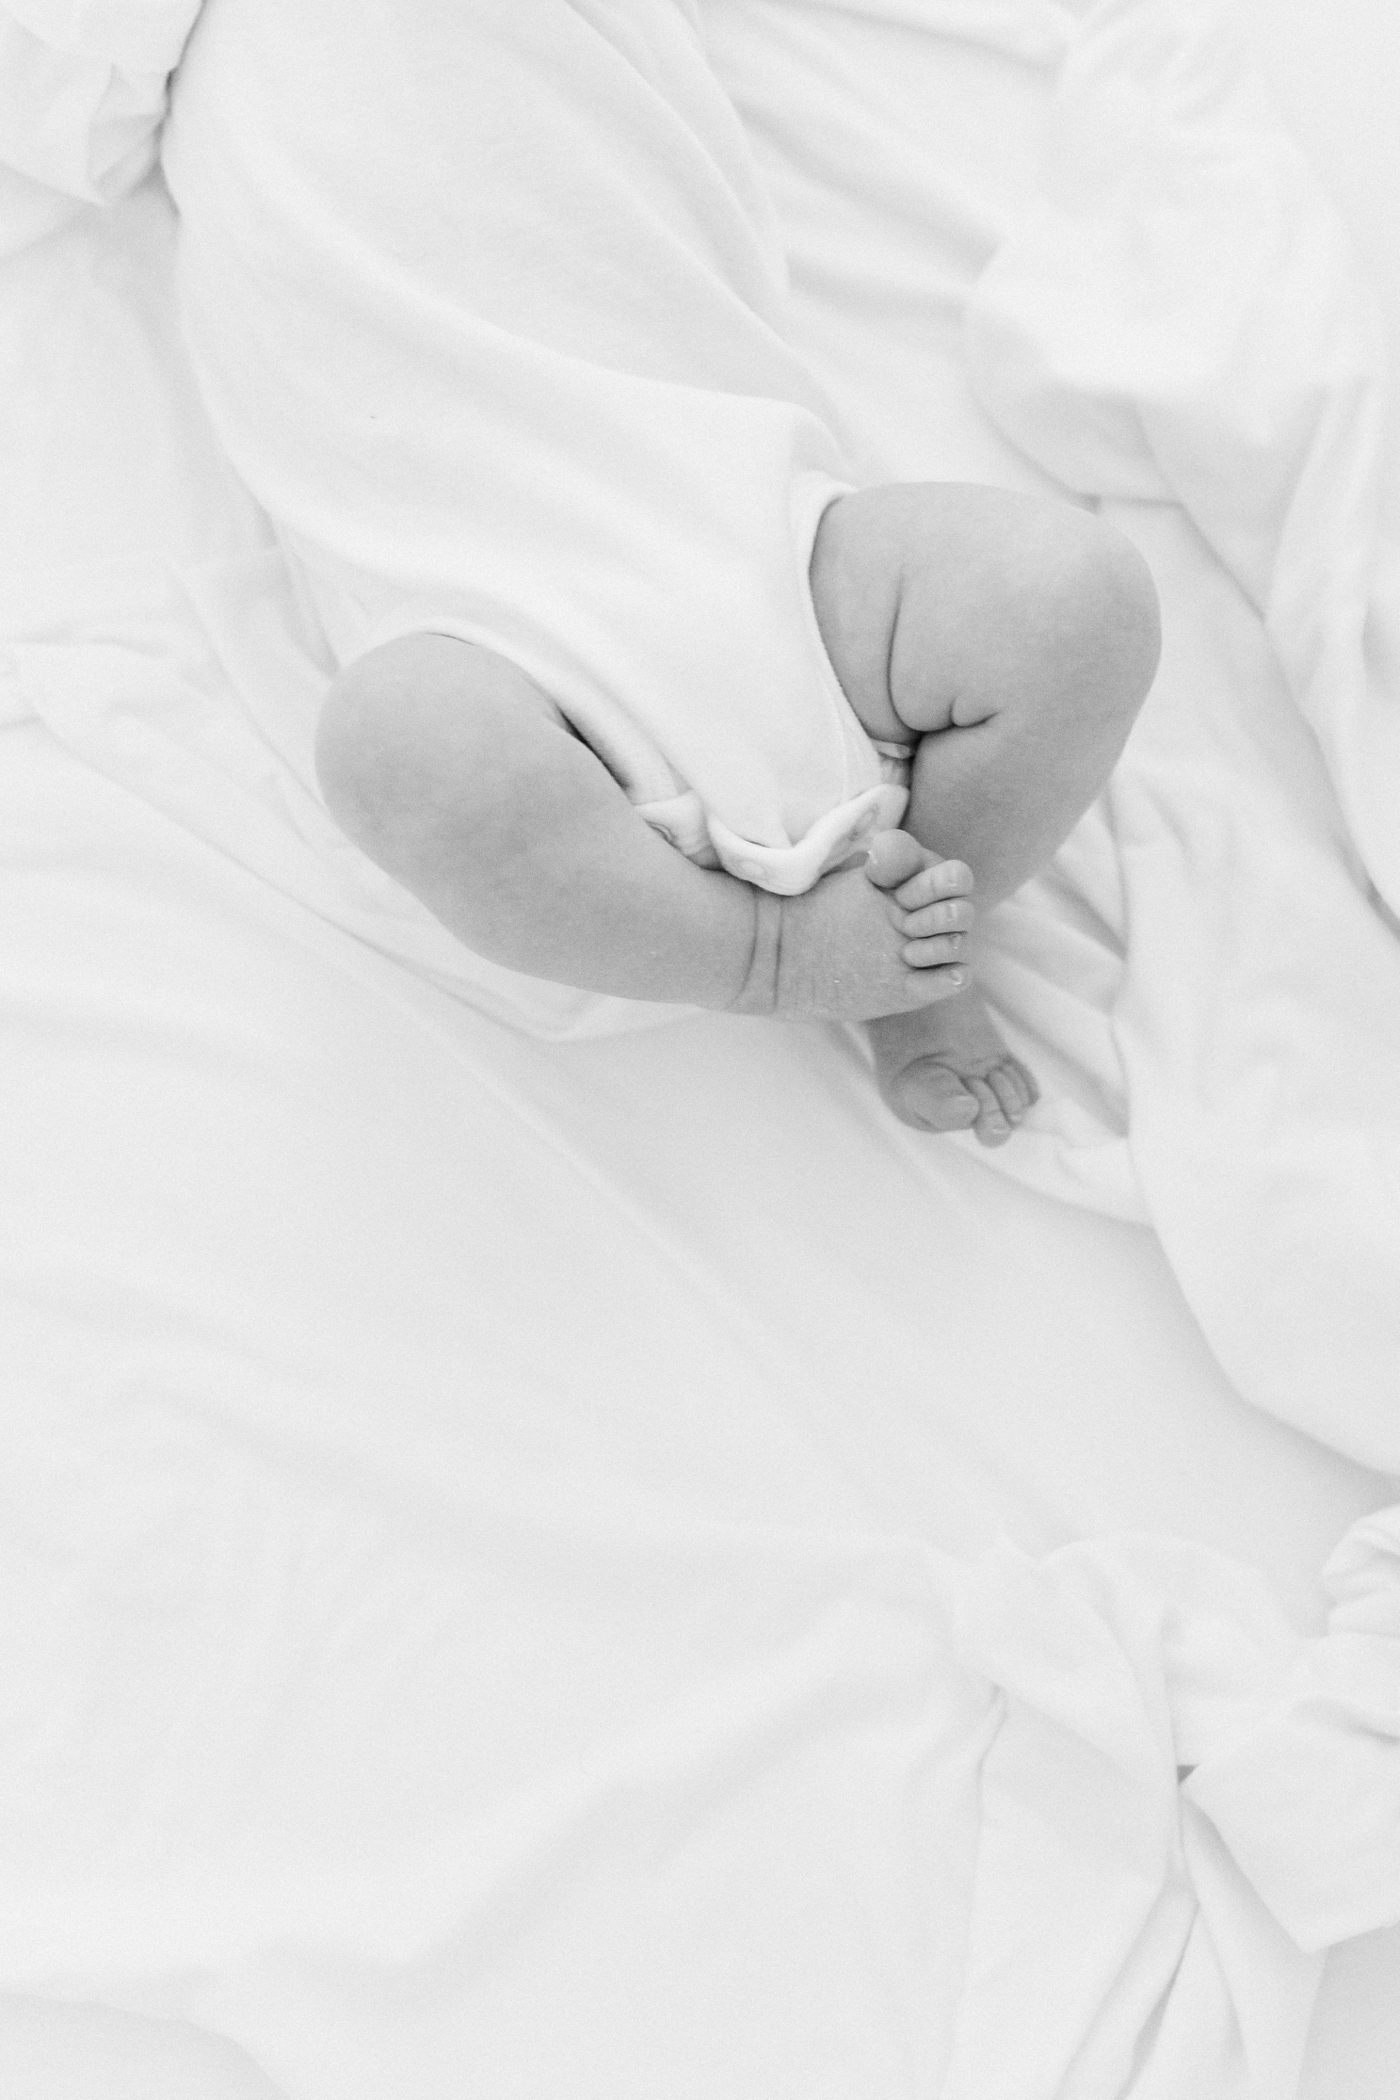 Tiny newborn baby feet | Photo by Caitlyn Motycka Photography.